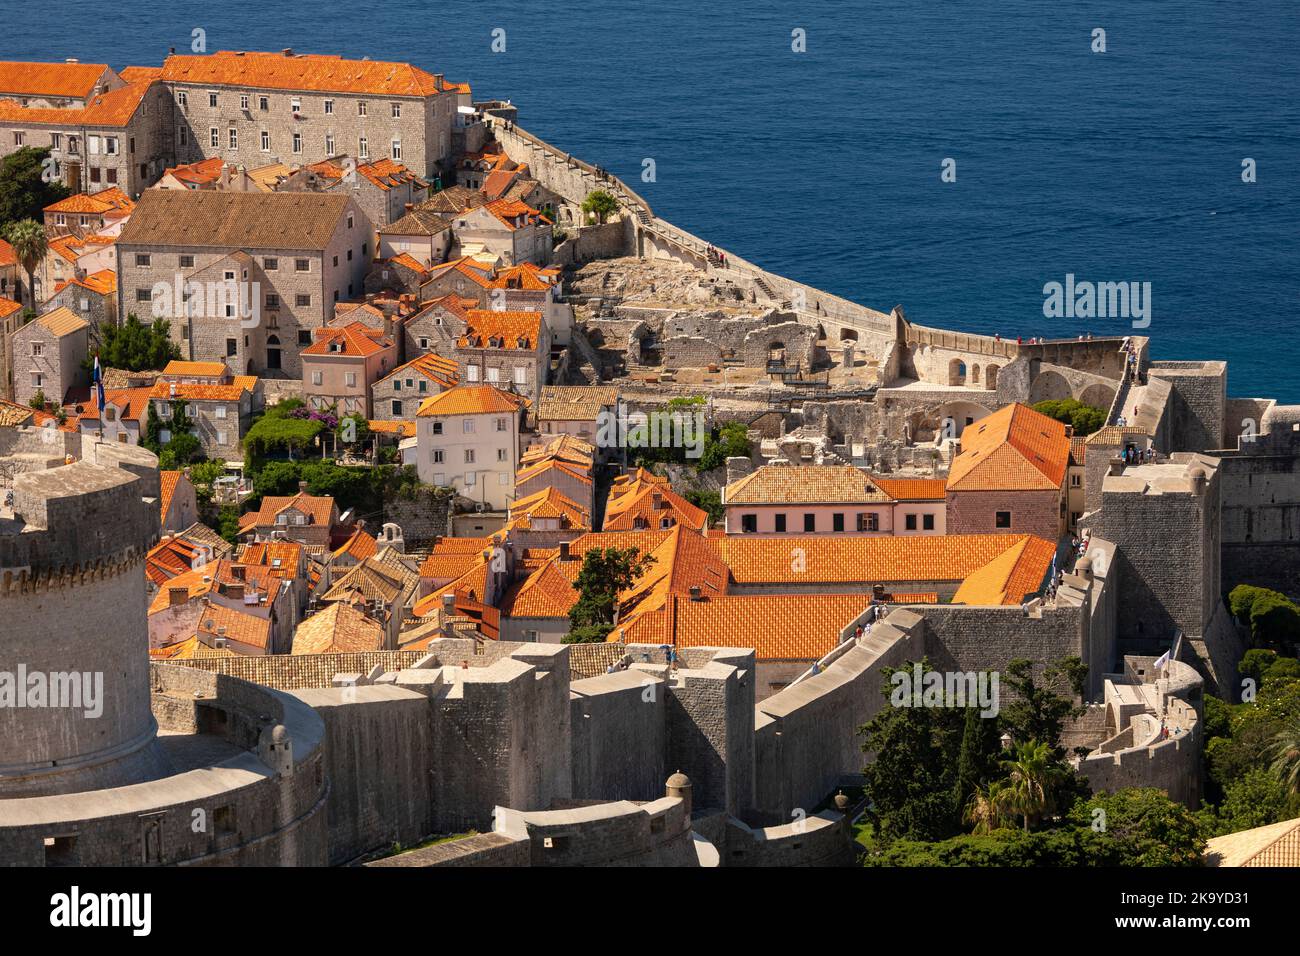 DUBROVNIK, KROATIEN, EUROPA - die ummauerte Festungsstadt Dubrovnik an der Dalmatiner Küste. Stockfoto